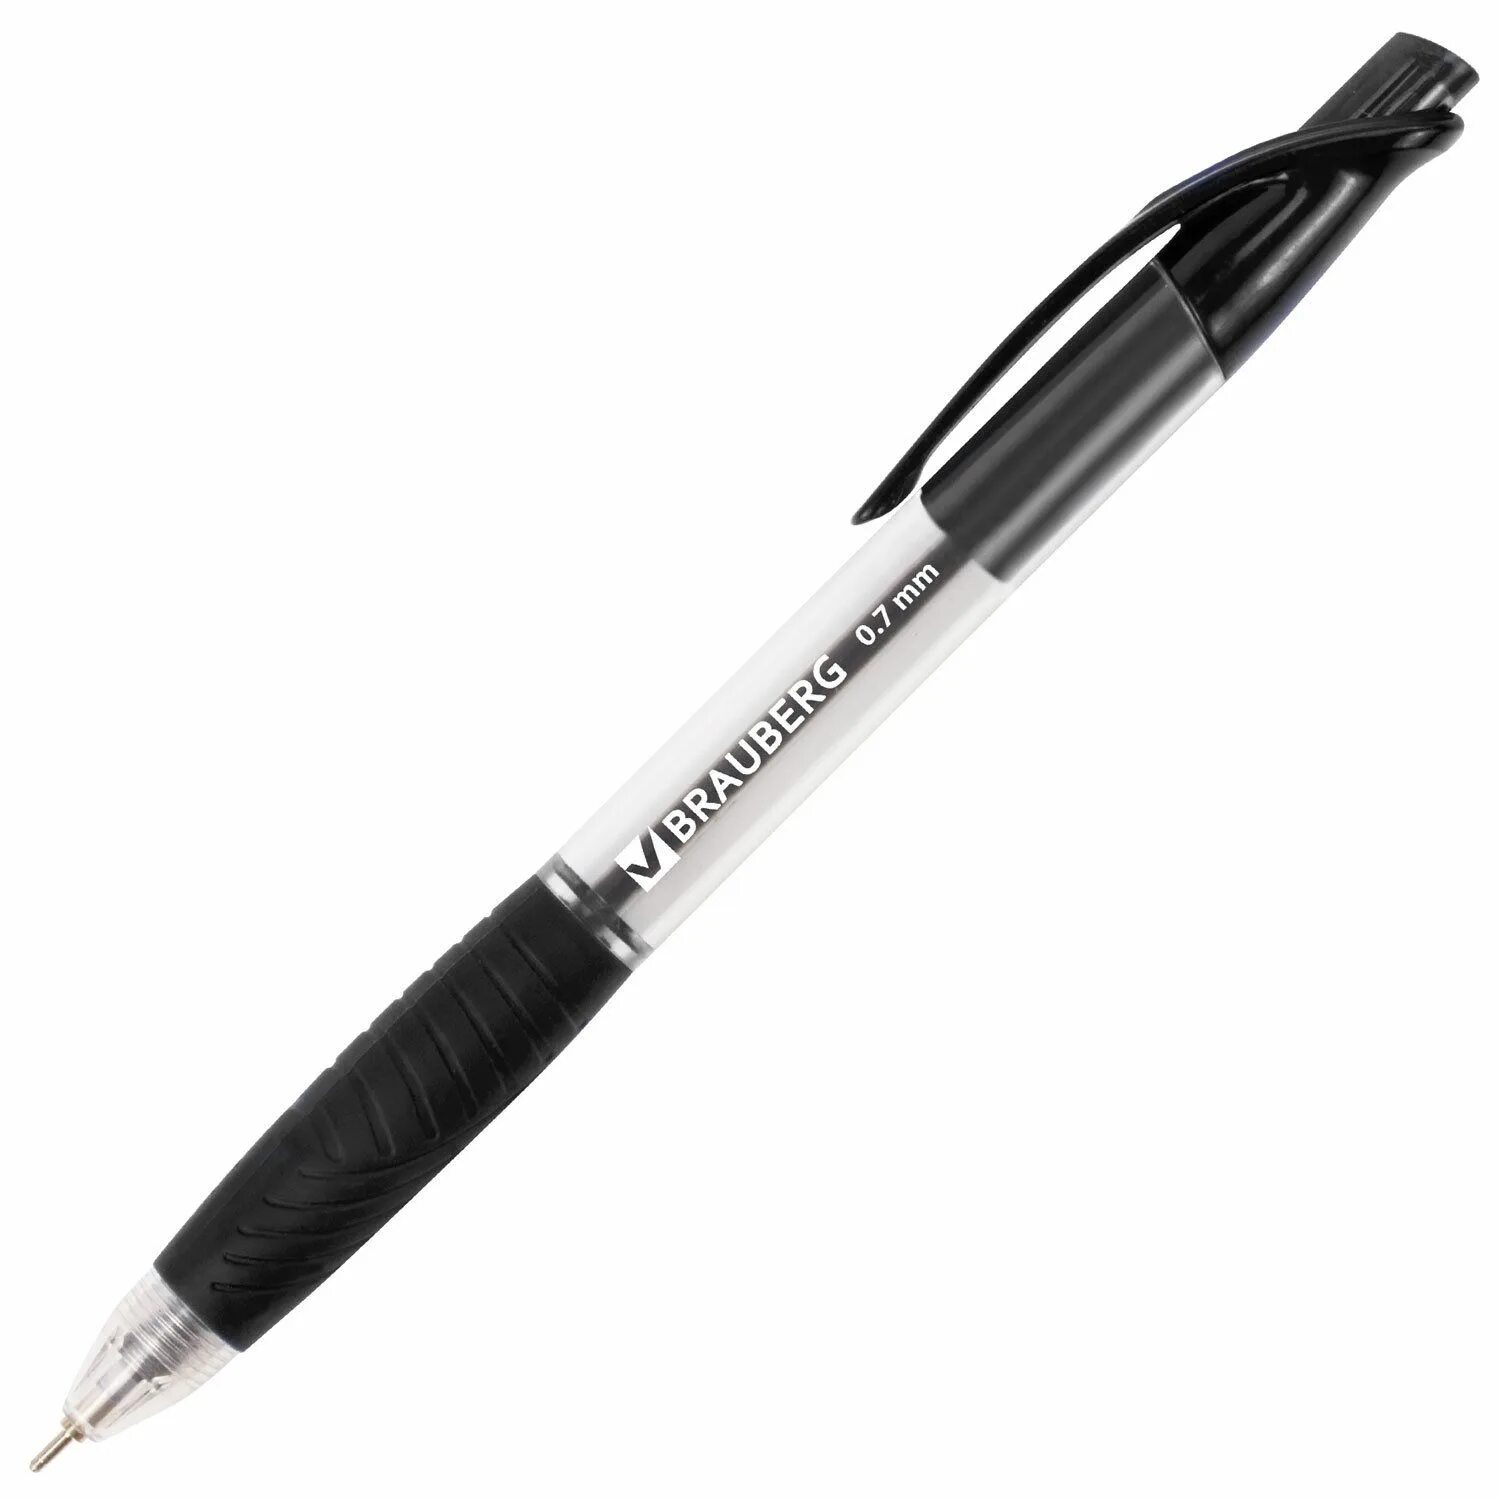 Масляные черные ручки. БРАУБЕРГ ручка автоматическая масляная черная. Ручки шариковые черные БРАУБЕРГ. Черная масляная ручка БРАУБЕРГ. Ручка автомат BRAUBERG 0,7 арт 142133.